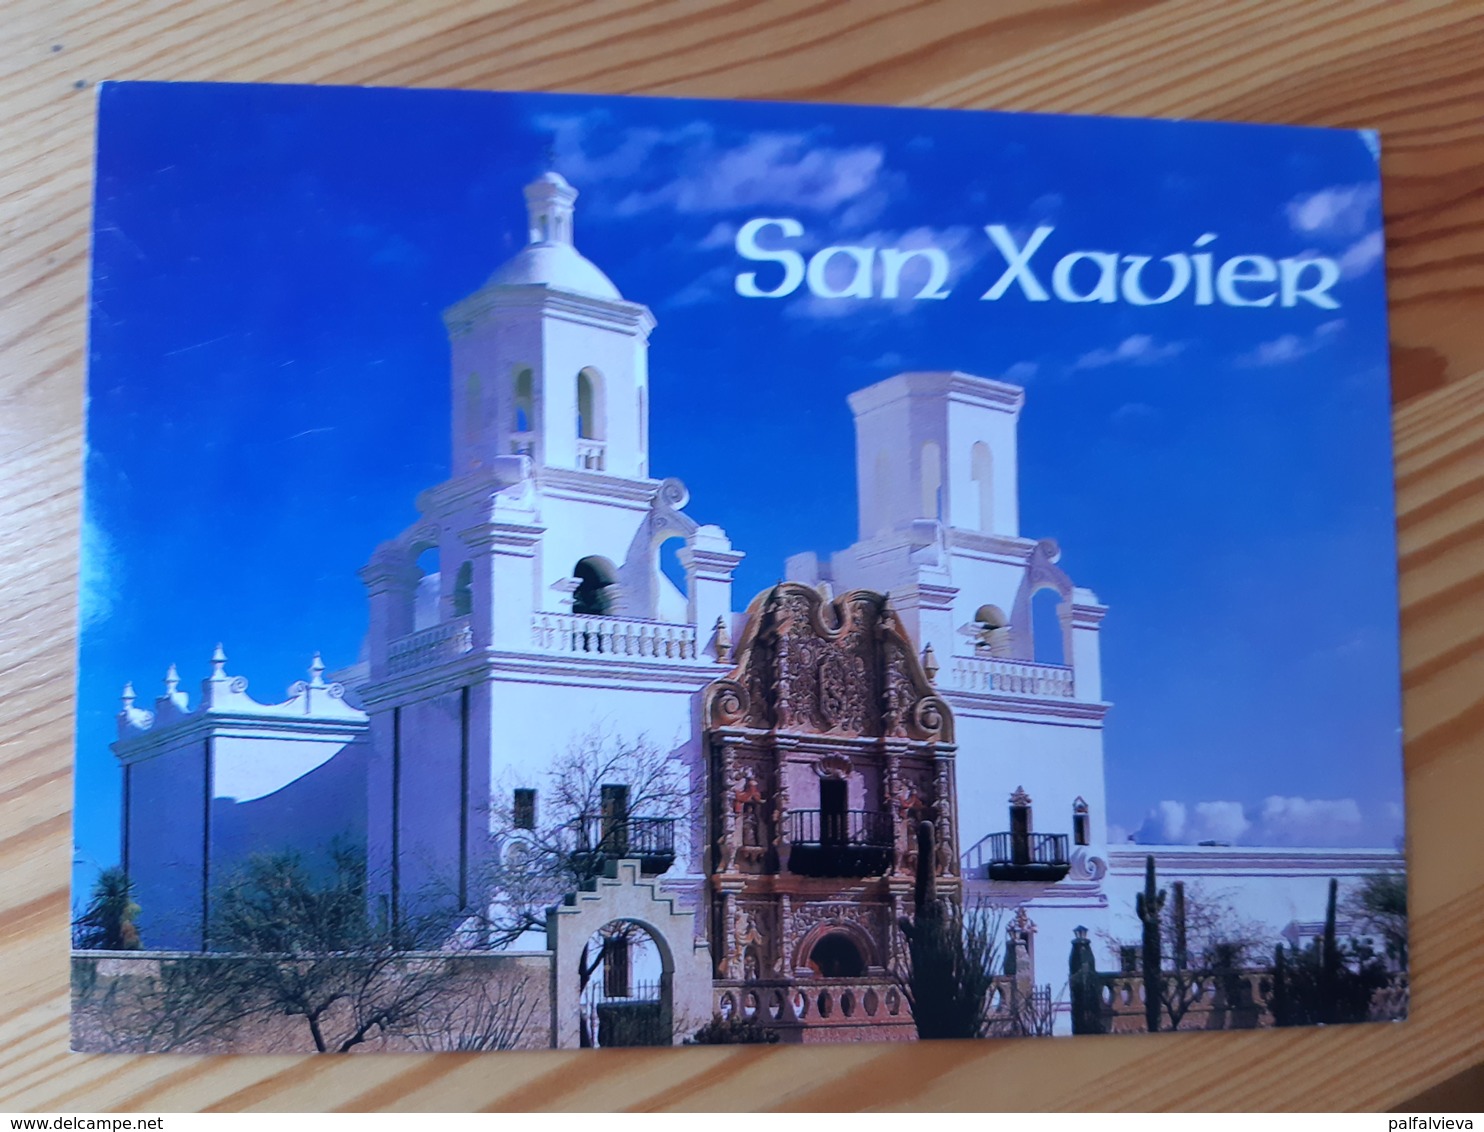 Postcard, USA - San Xavier, Tucson, Arizona, Religion, Church, Mint - Tucson